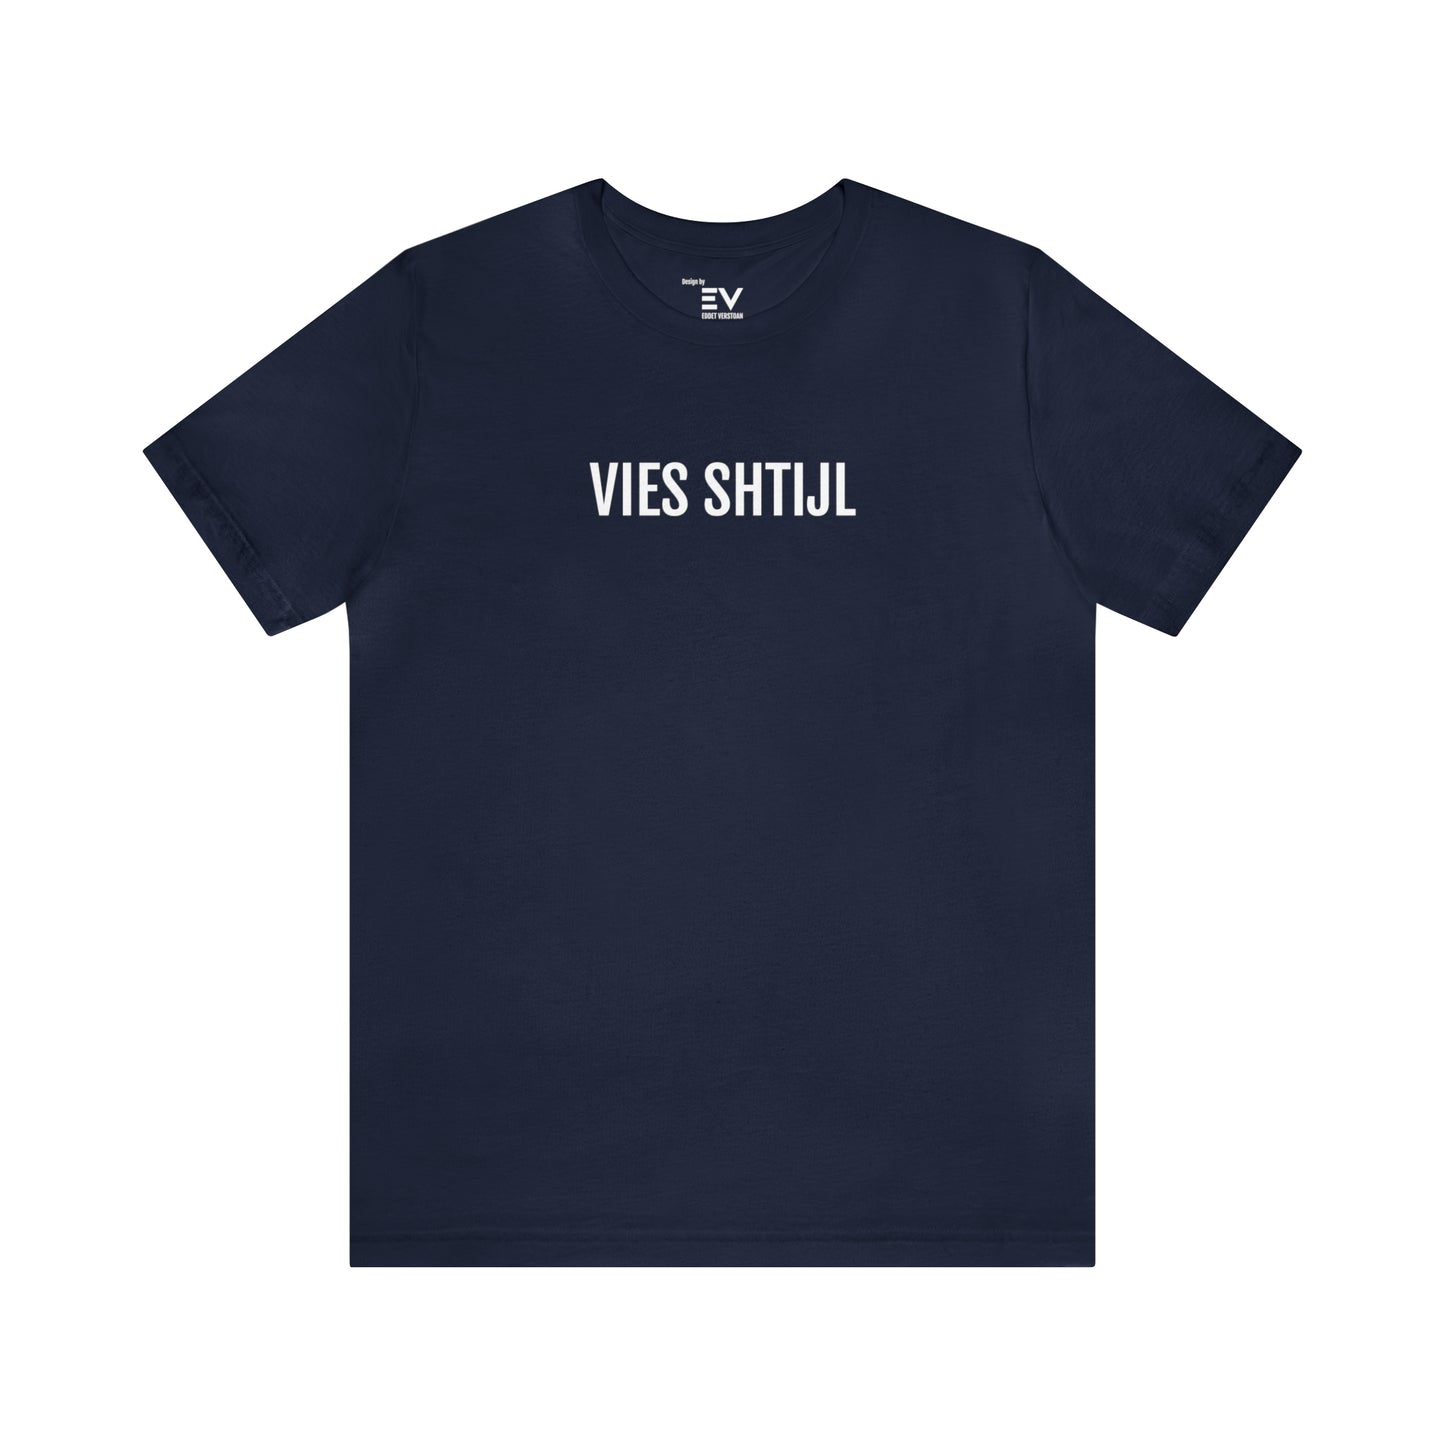 T-shirt met Vies Shtijl opdruk in het Limburgse dialect uit Genk beter bekent als citétaal